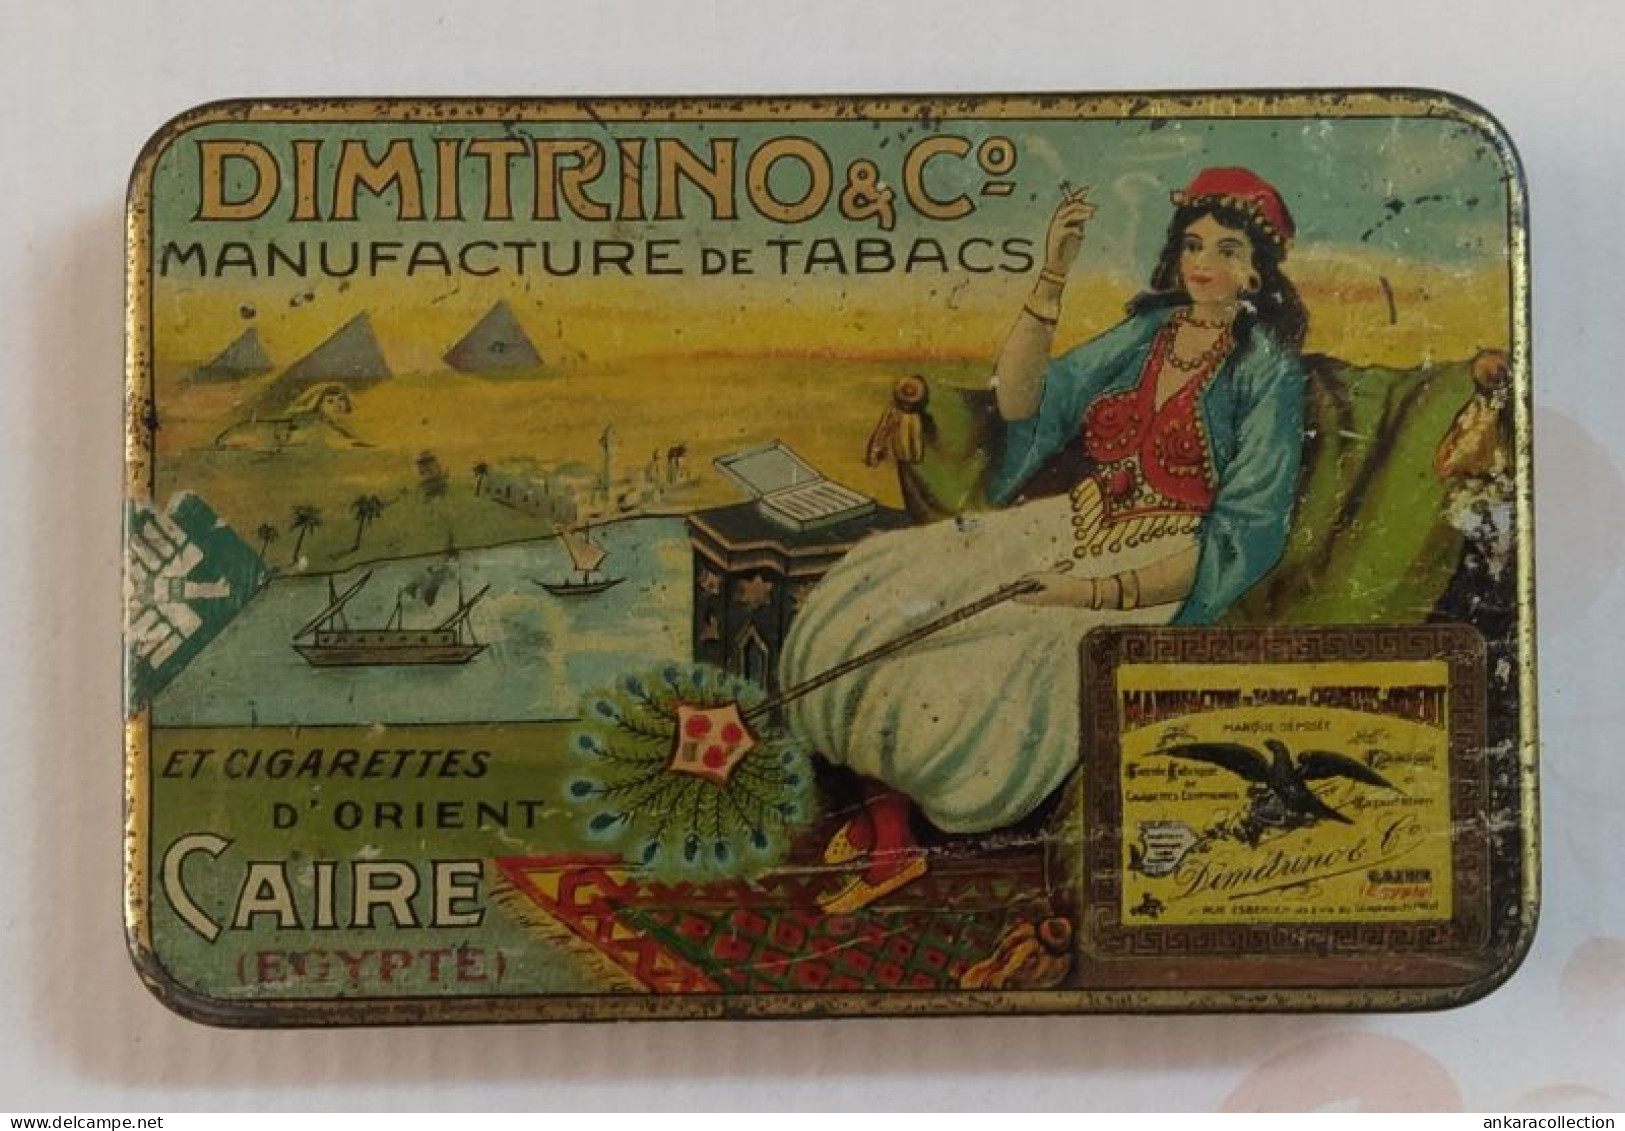 AC - DIMITRINO Co MANUFACTURE DE TABACS CAIRE EGYPTE CIGARETTE - TOBACCO EMPTY VINTAGE TIN BOX - Empty Tobacco Boxes